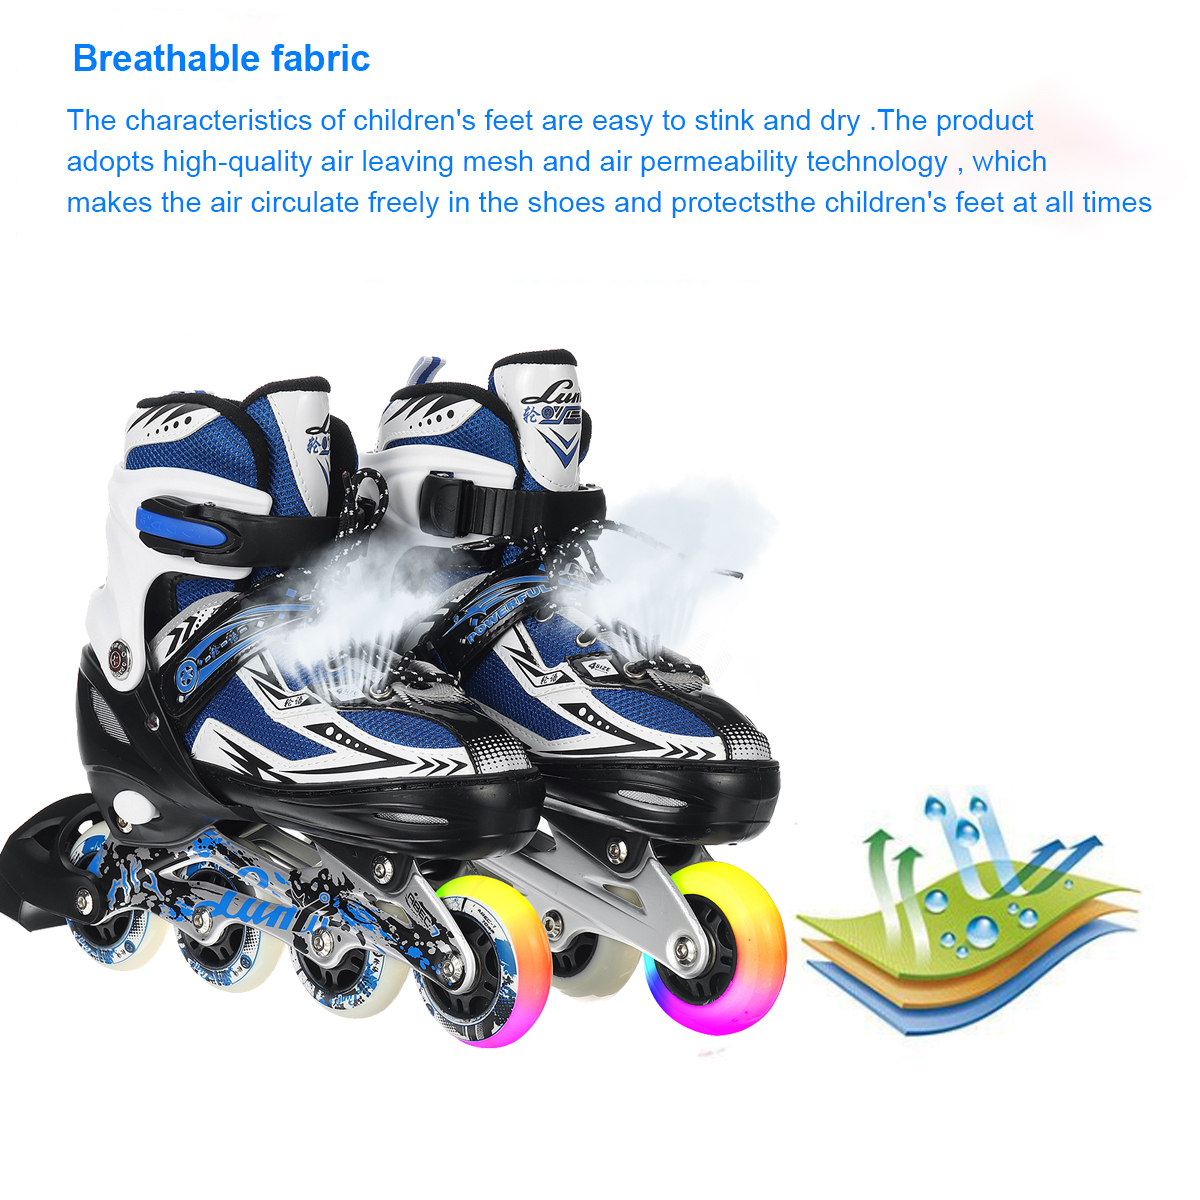 Light-up-Inline-Skates-for-Adults-Kids-Beginner-Roller-Skates-4-Gear-Adjustable-Roller-Blading-Breat-1818828-4